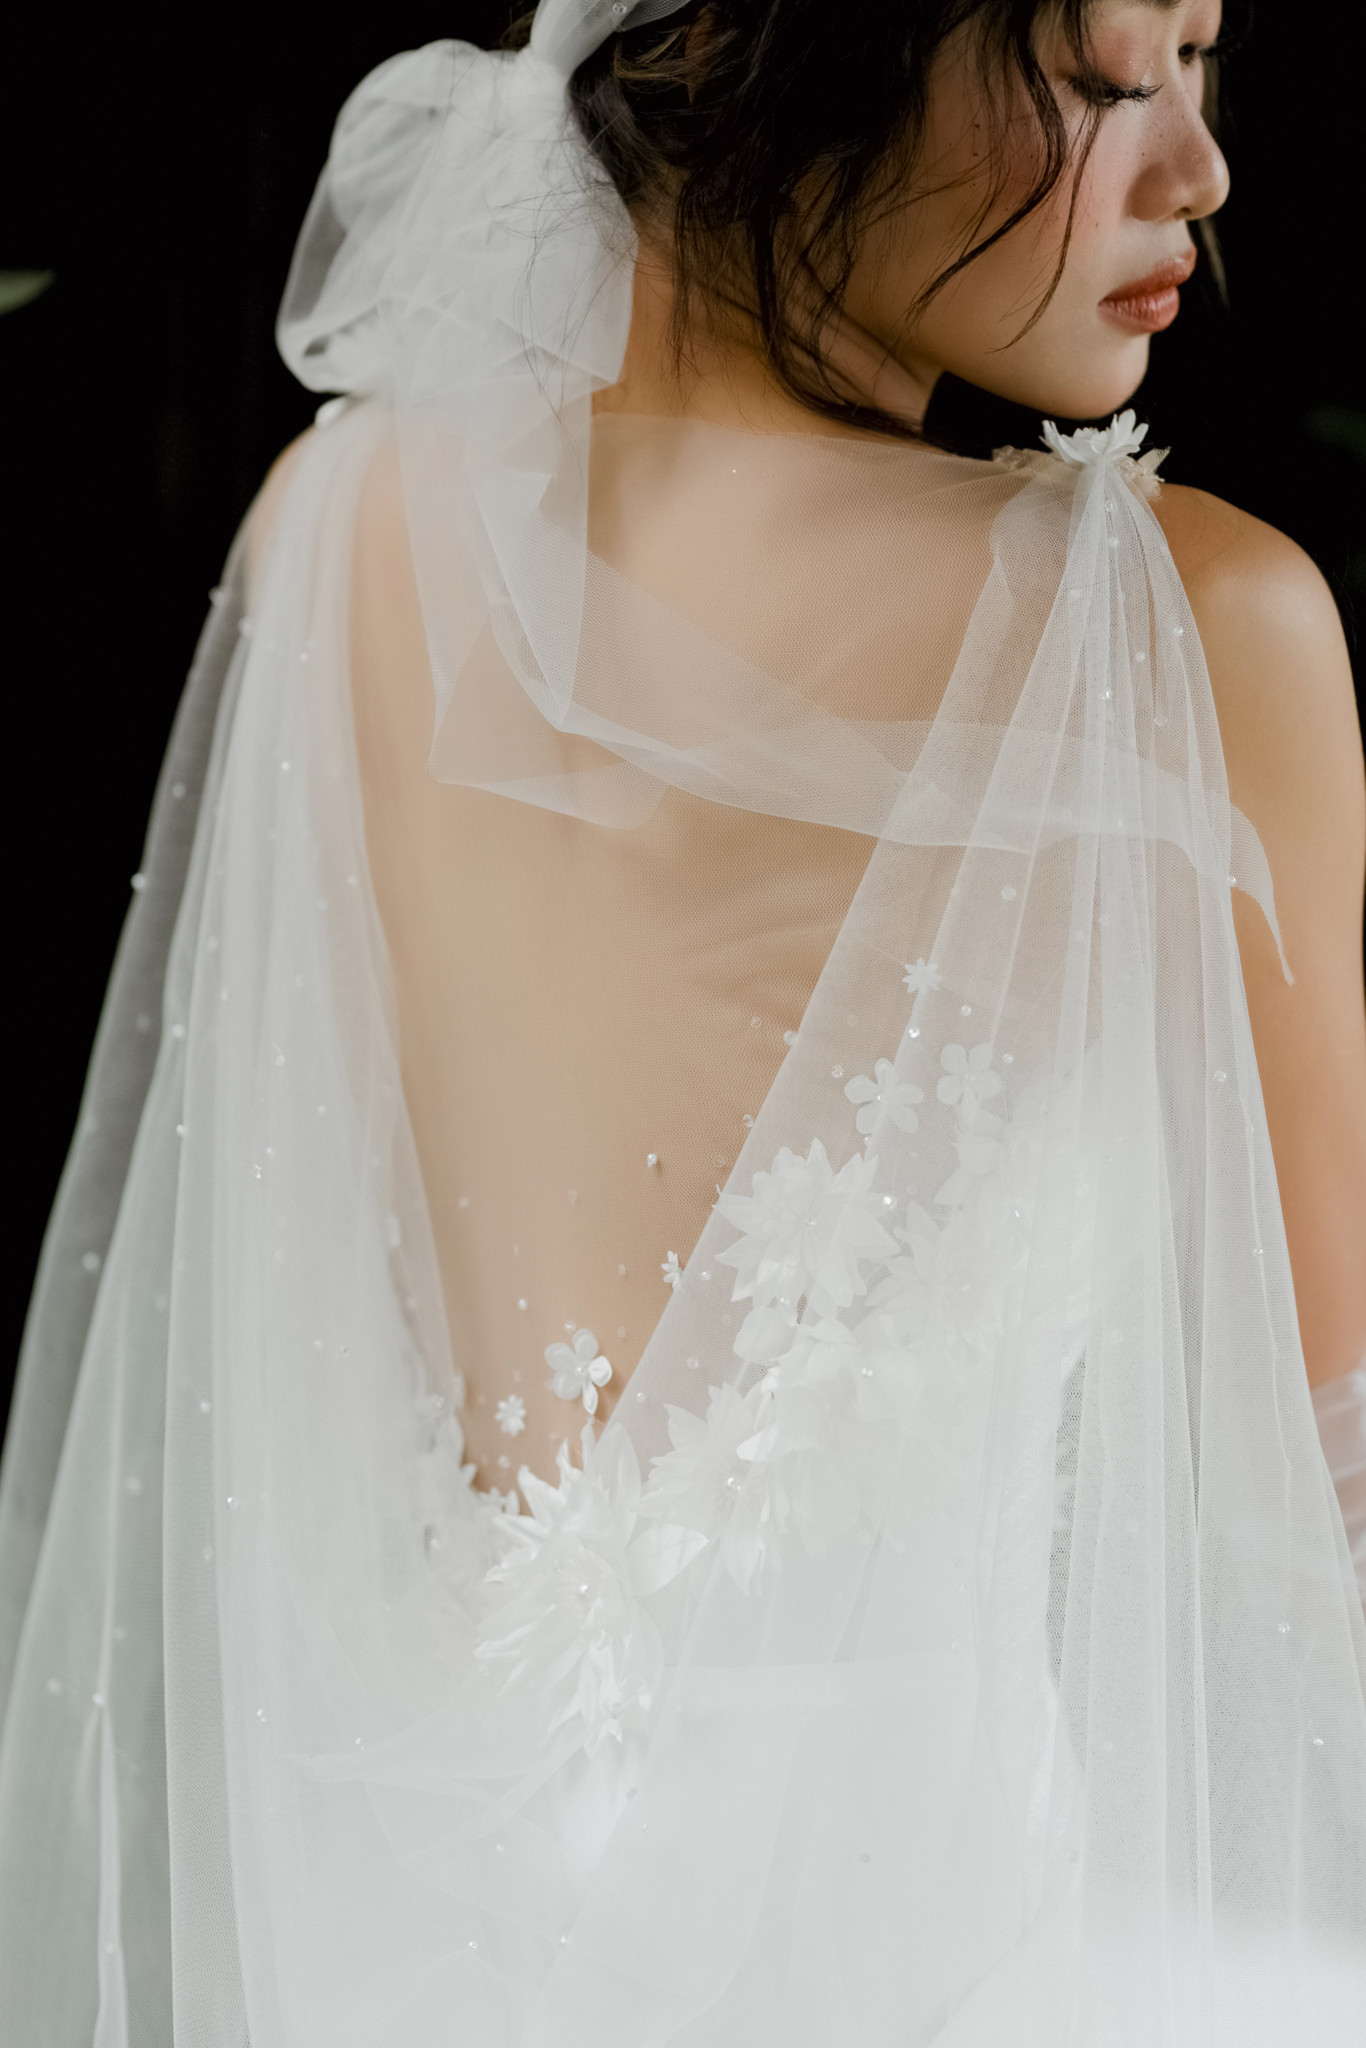 Mẹo chọn váy cưới đẹp cho cô dâu – quynhanhbridal